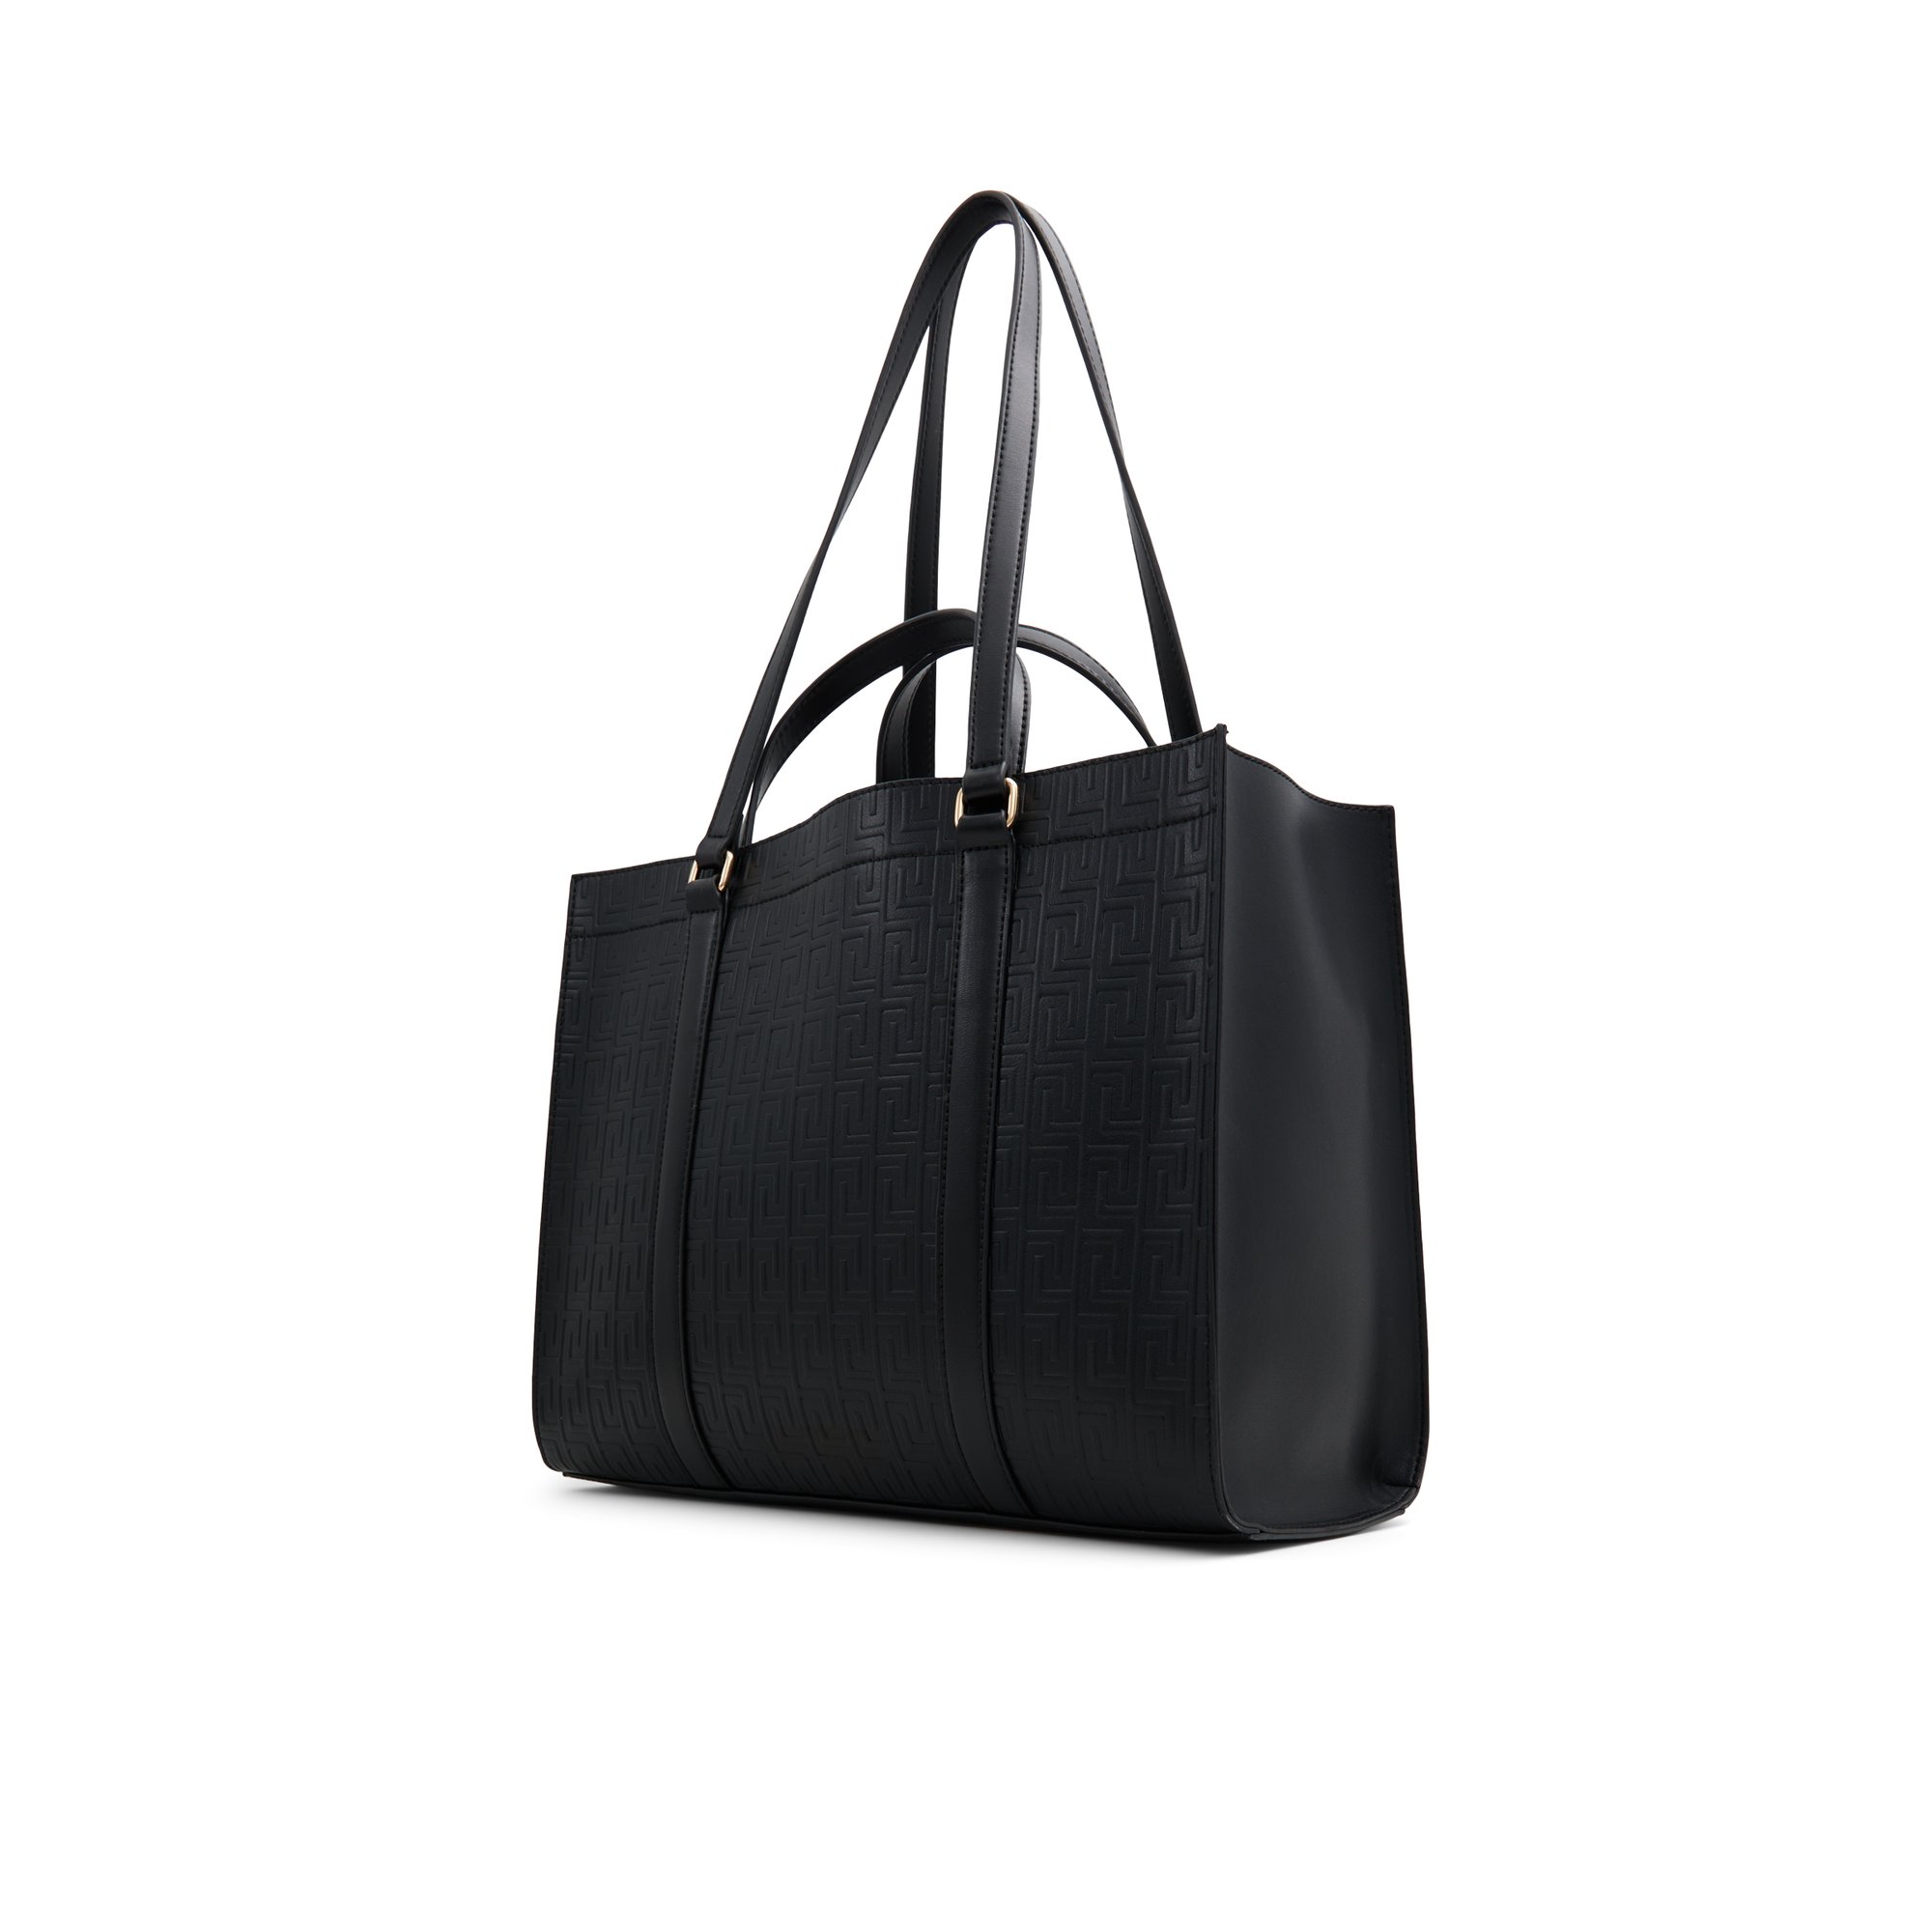 ALDO Ninetoninex - Women's Handbags Totes